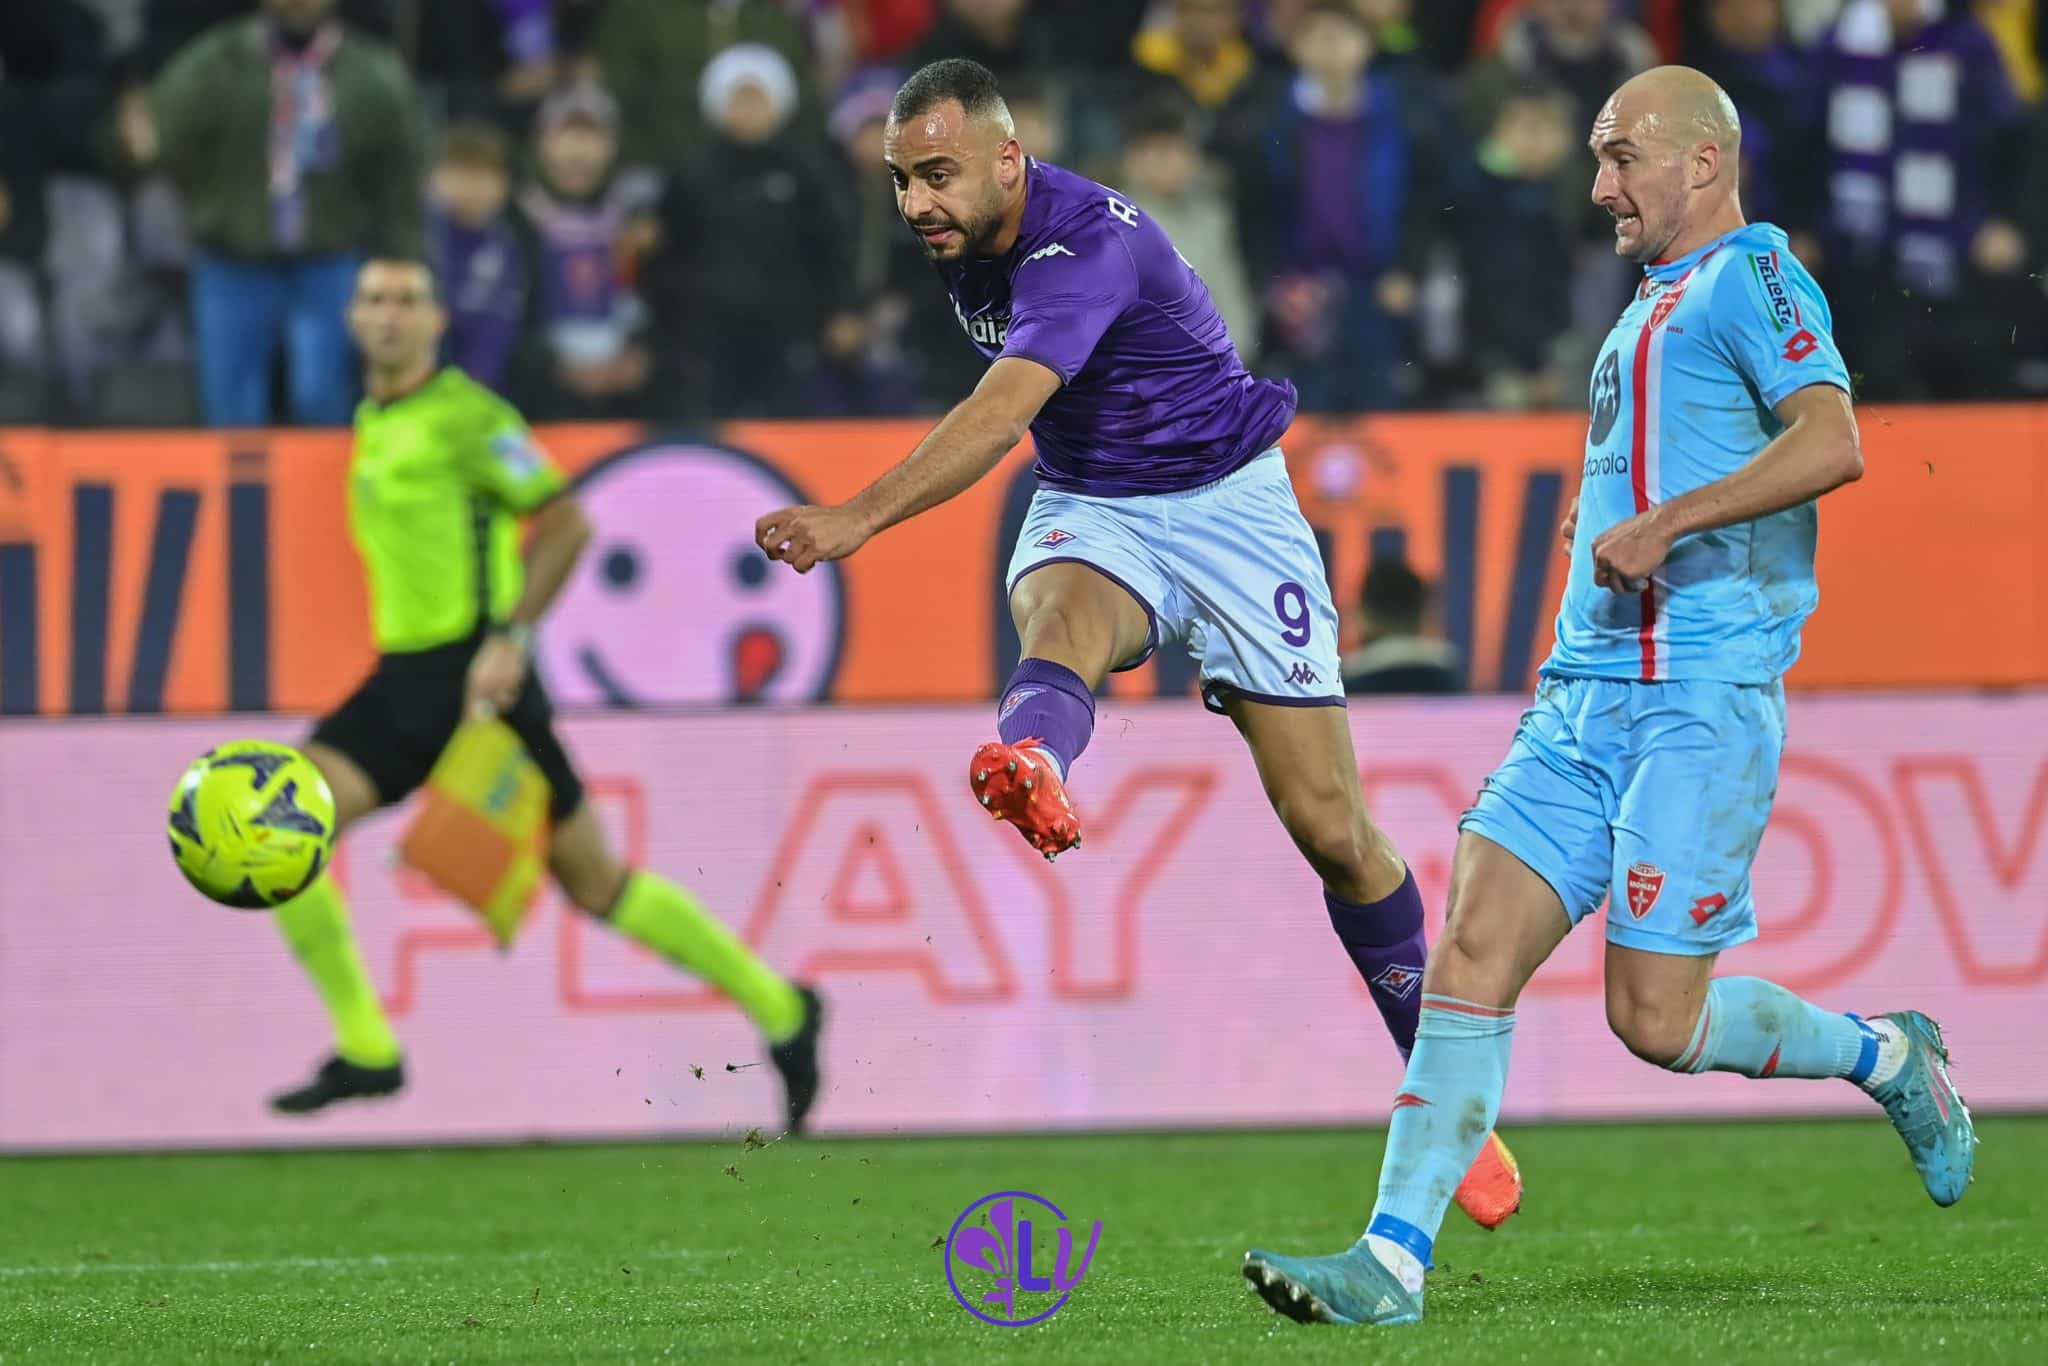 Cabral ne suffit pas pour l&rsquo;alto, au Franchi Fiorentina-Monza il termine 1-1.  Pas un bon début pour 2023